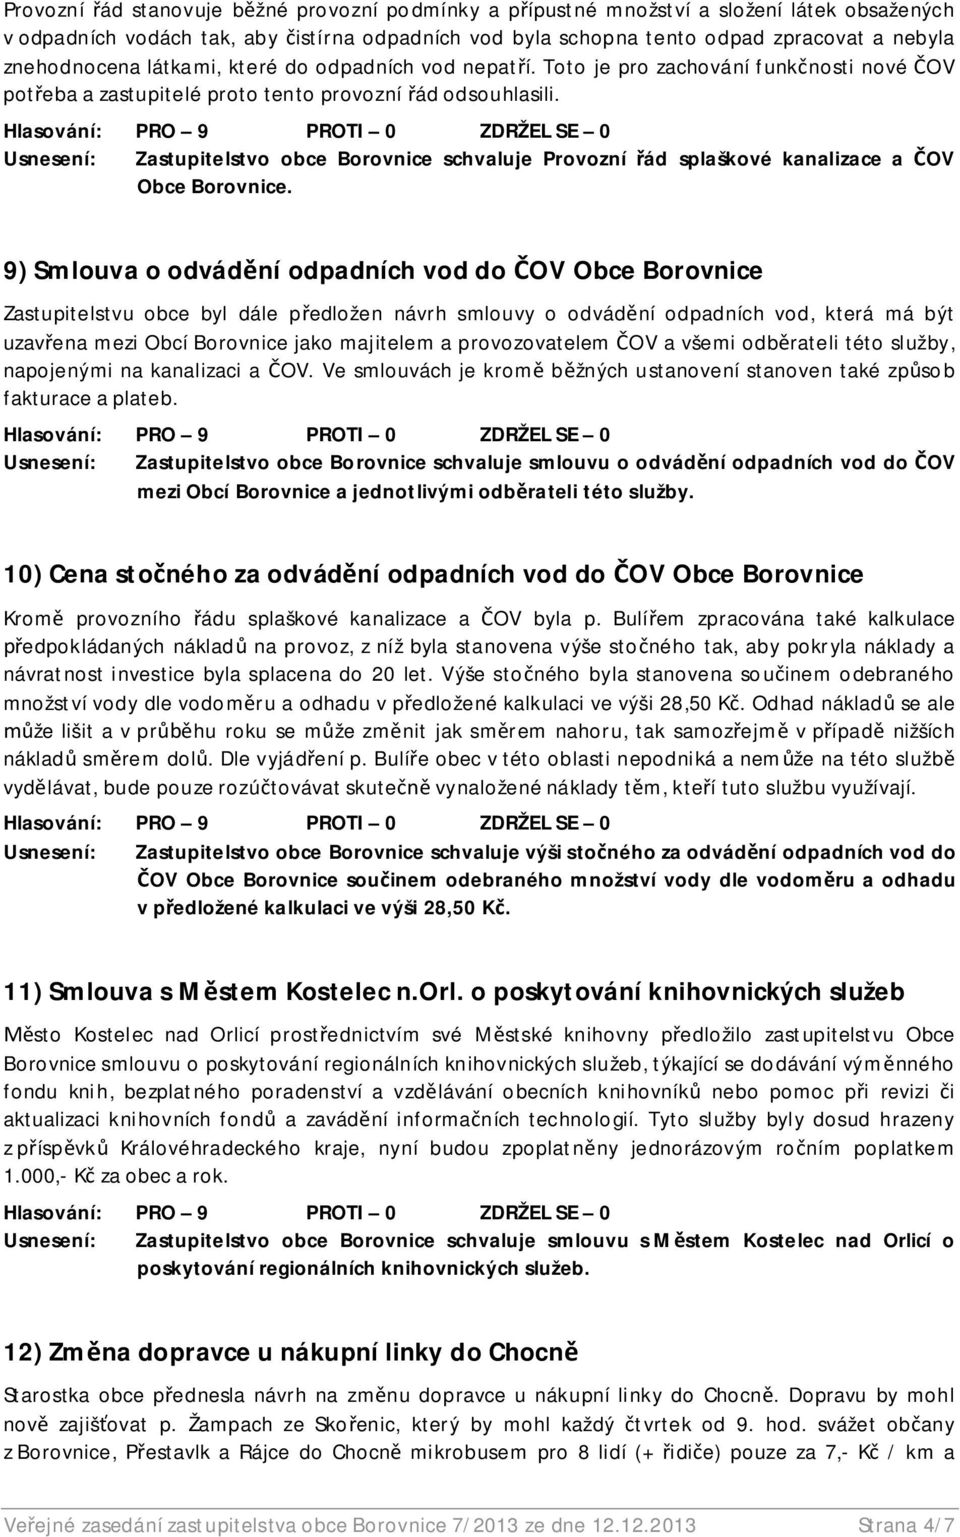 Usnesení: Zastupitelstvo obce Borovnice schvaluje Provozní ád splaškové kanalizace a OV Obce Borovnice.